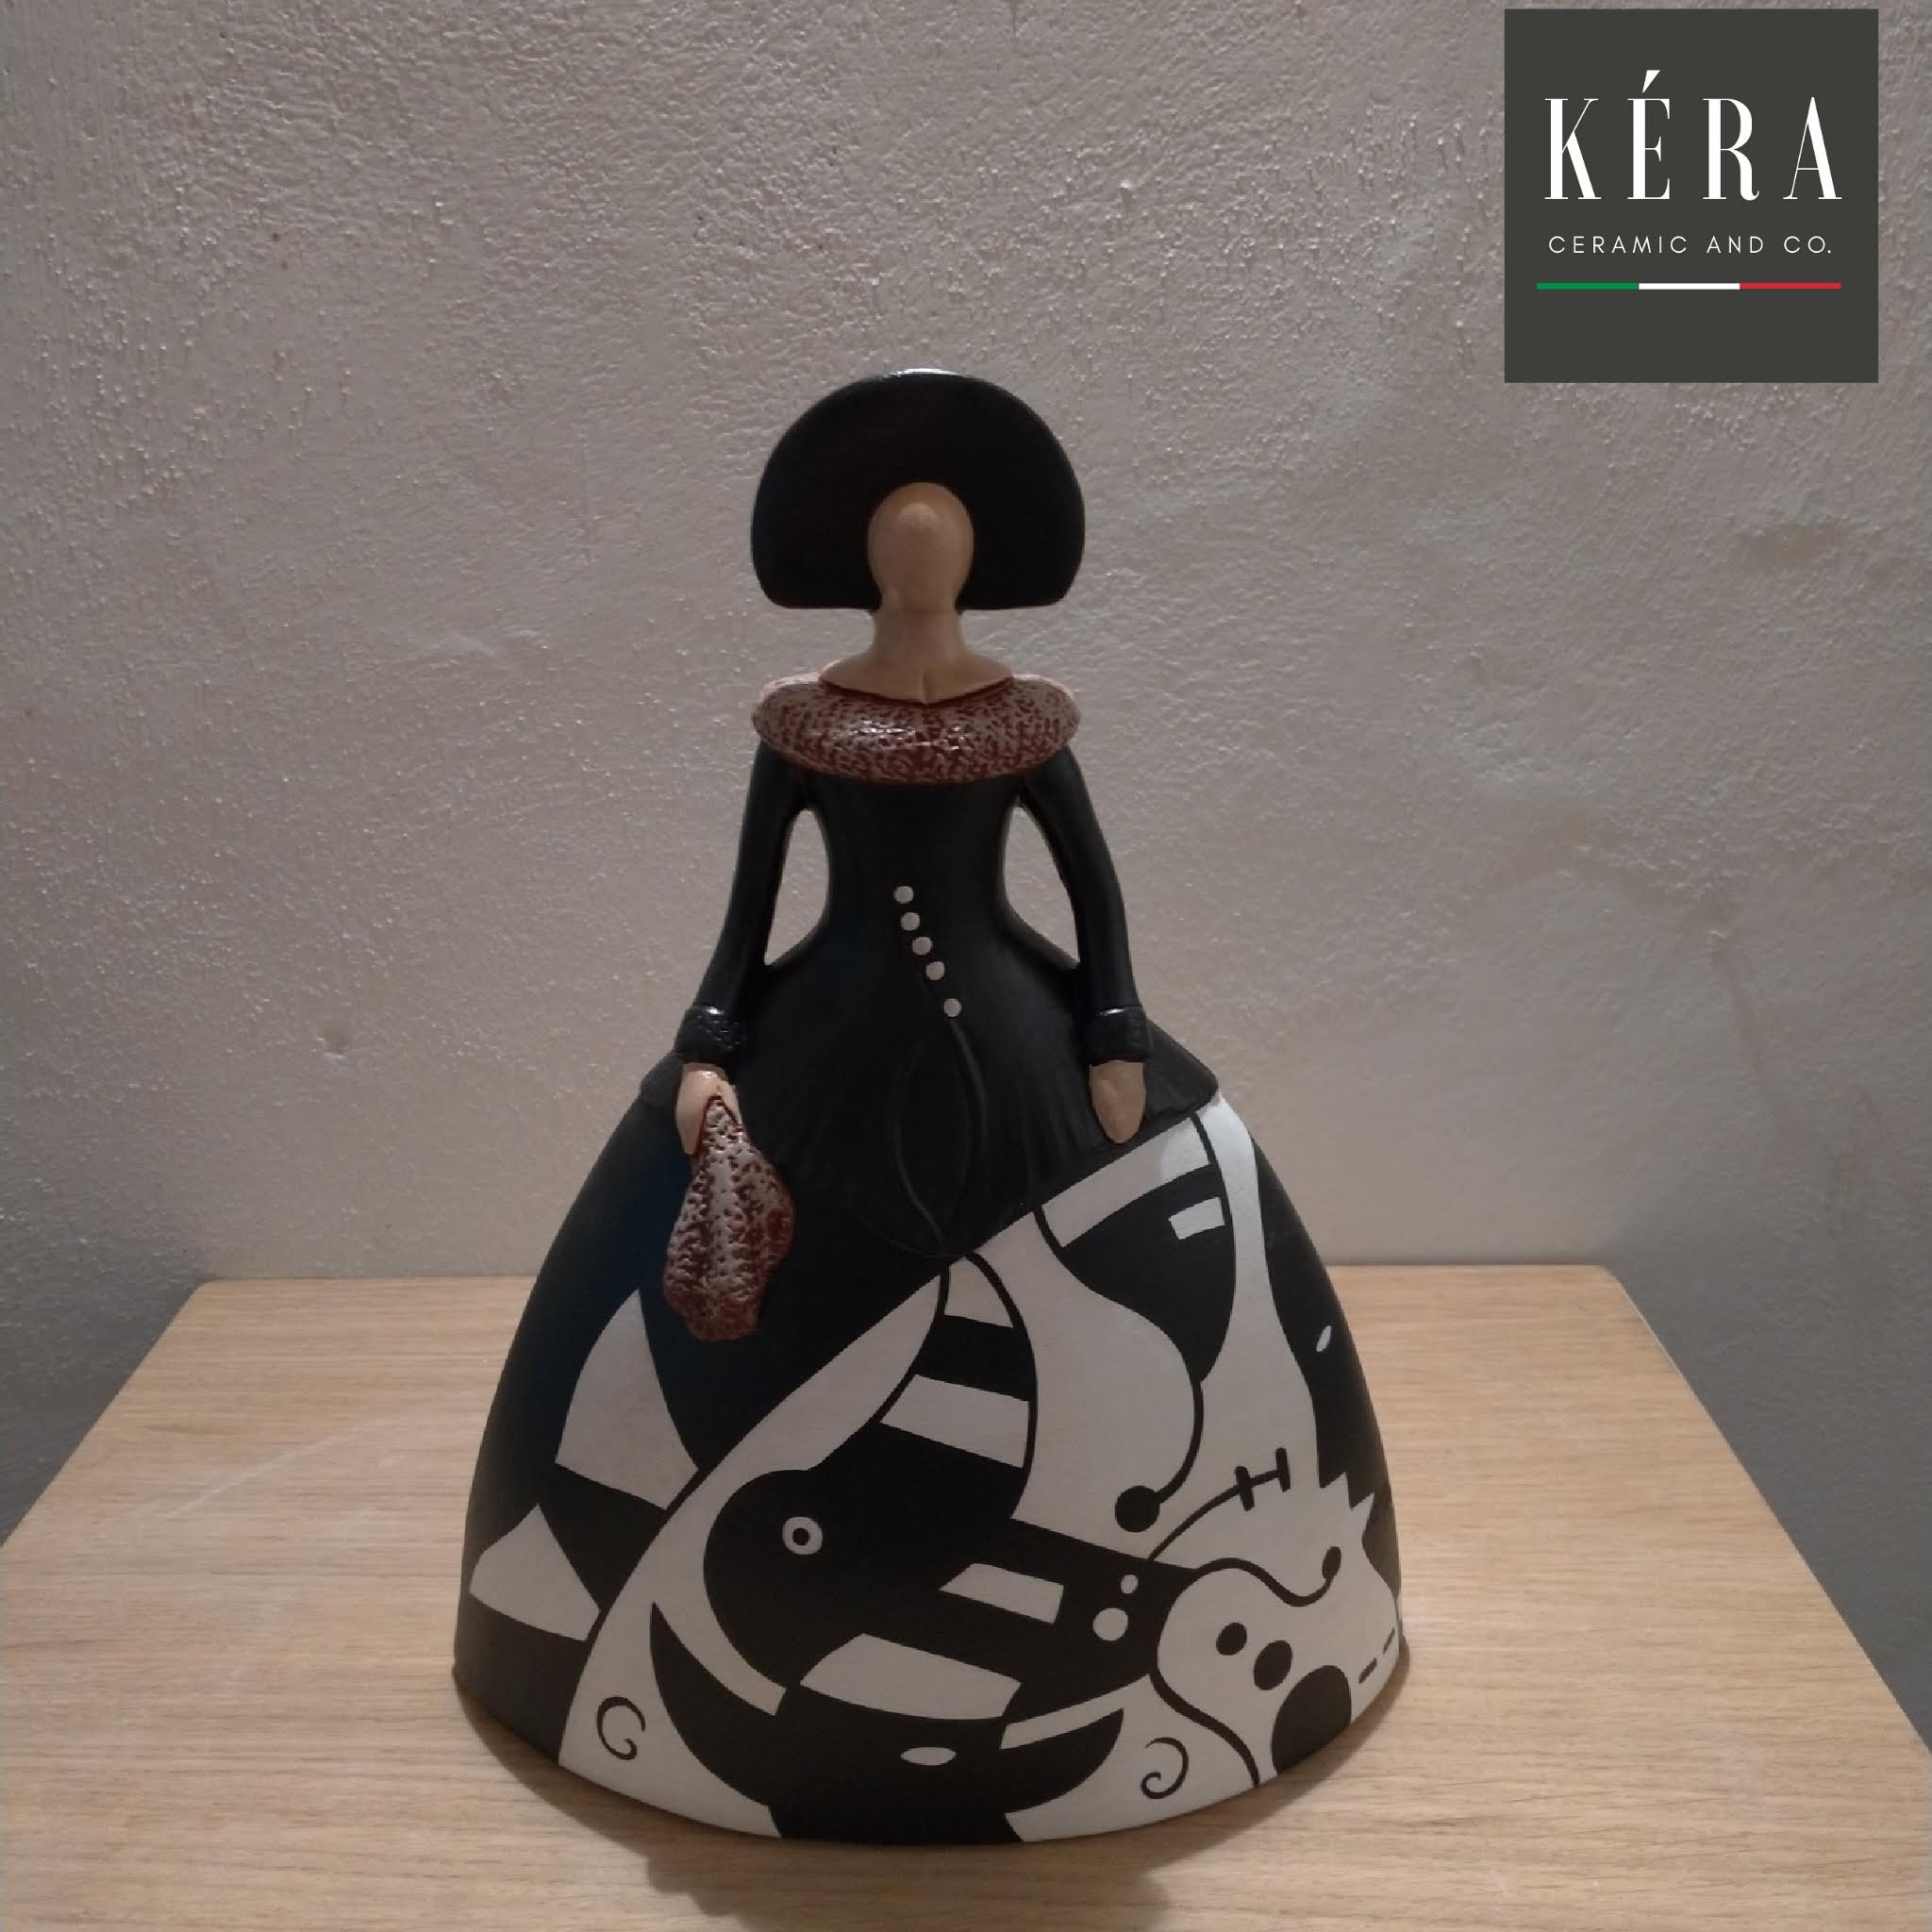 Dama moderna in ceramica / Modern ceramic figurine